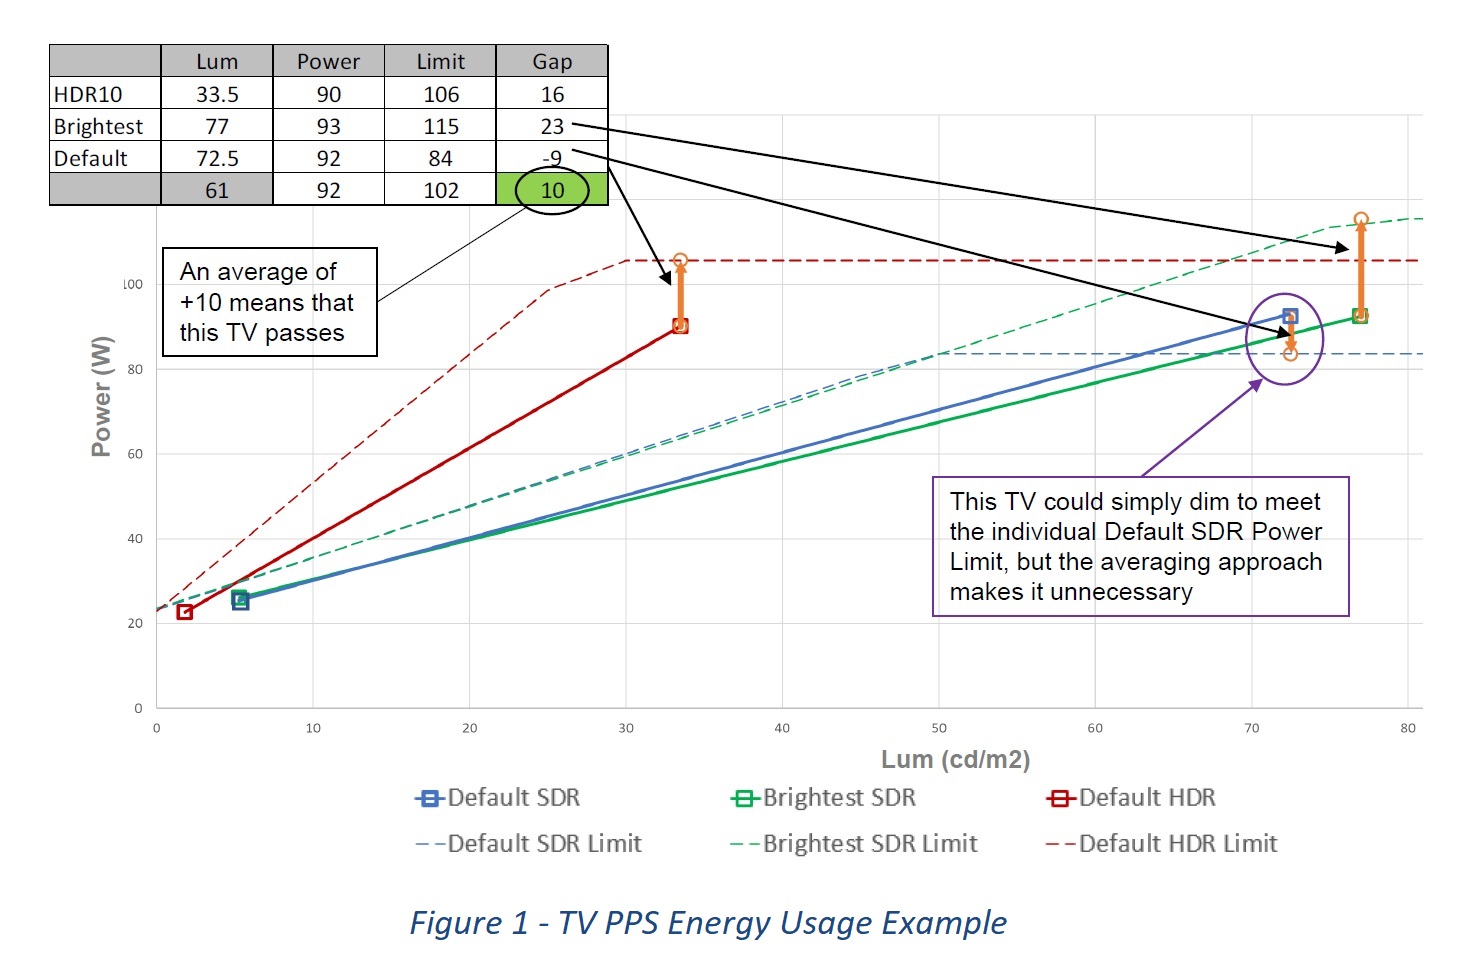 图1 - 电视机PPS用能示例